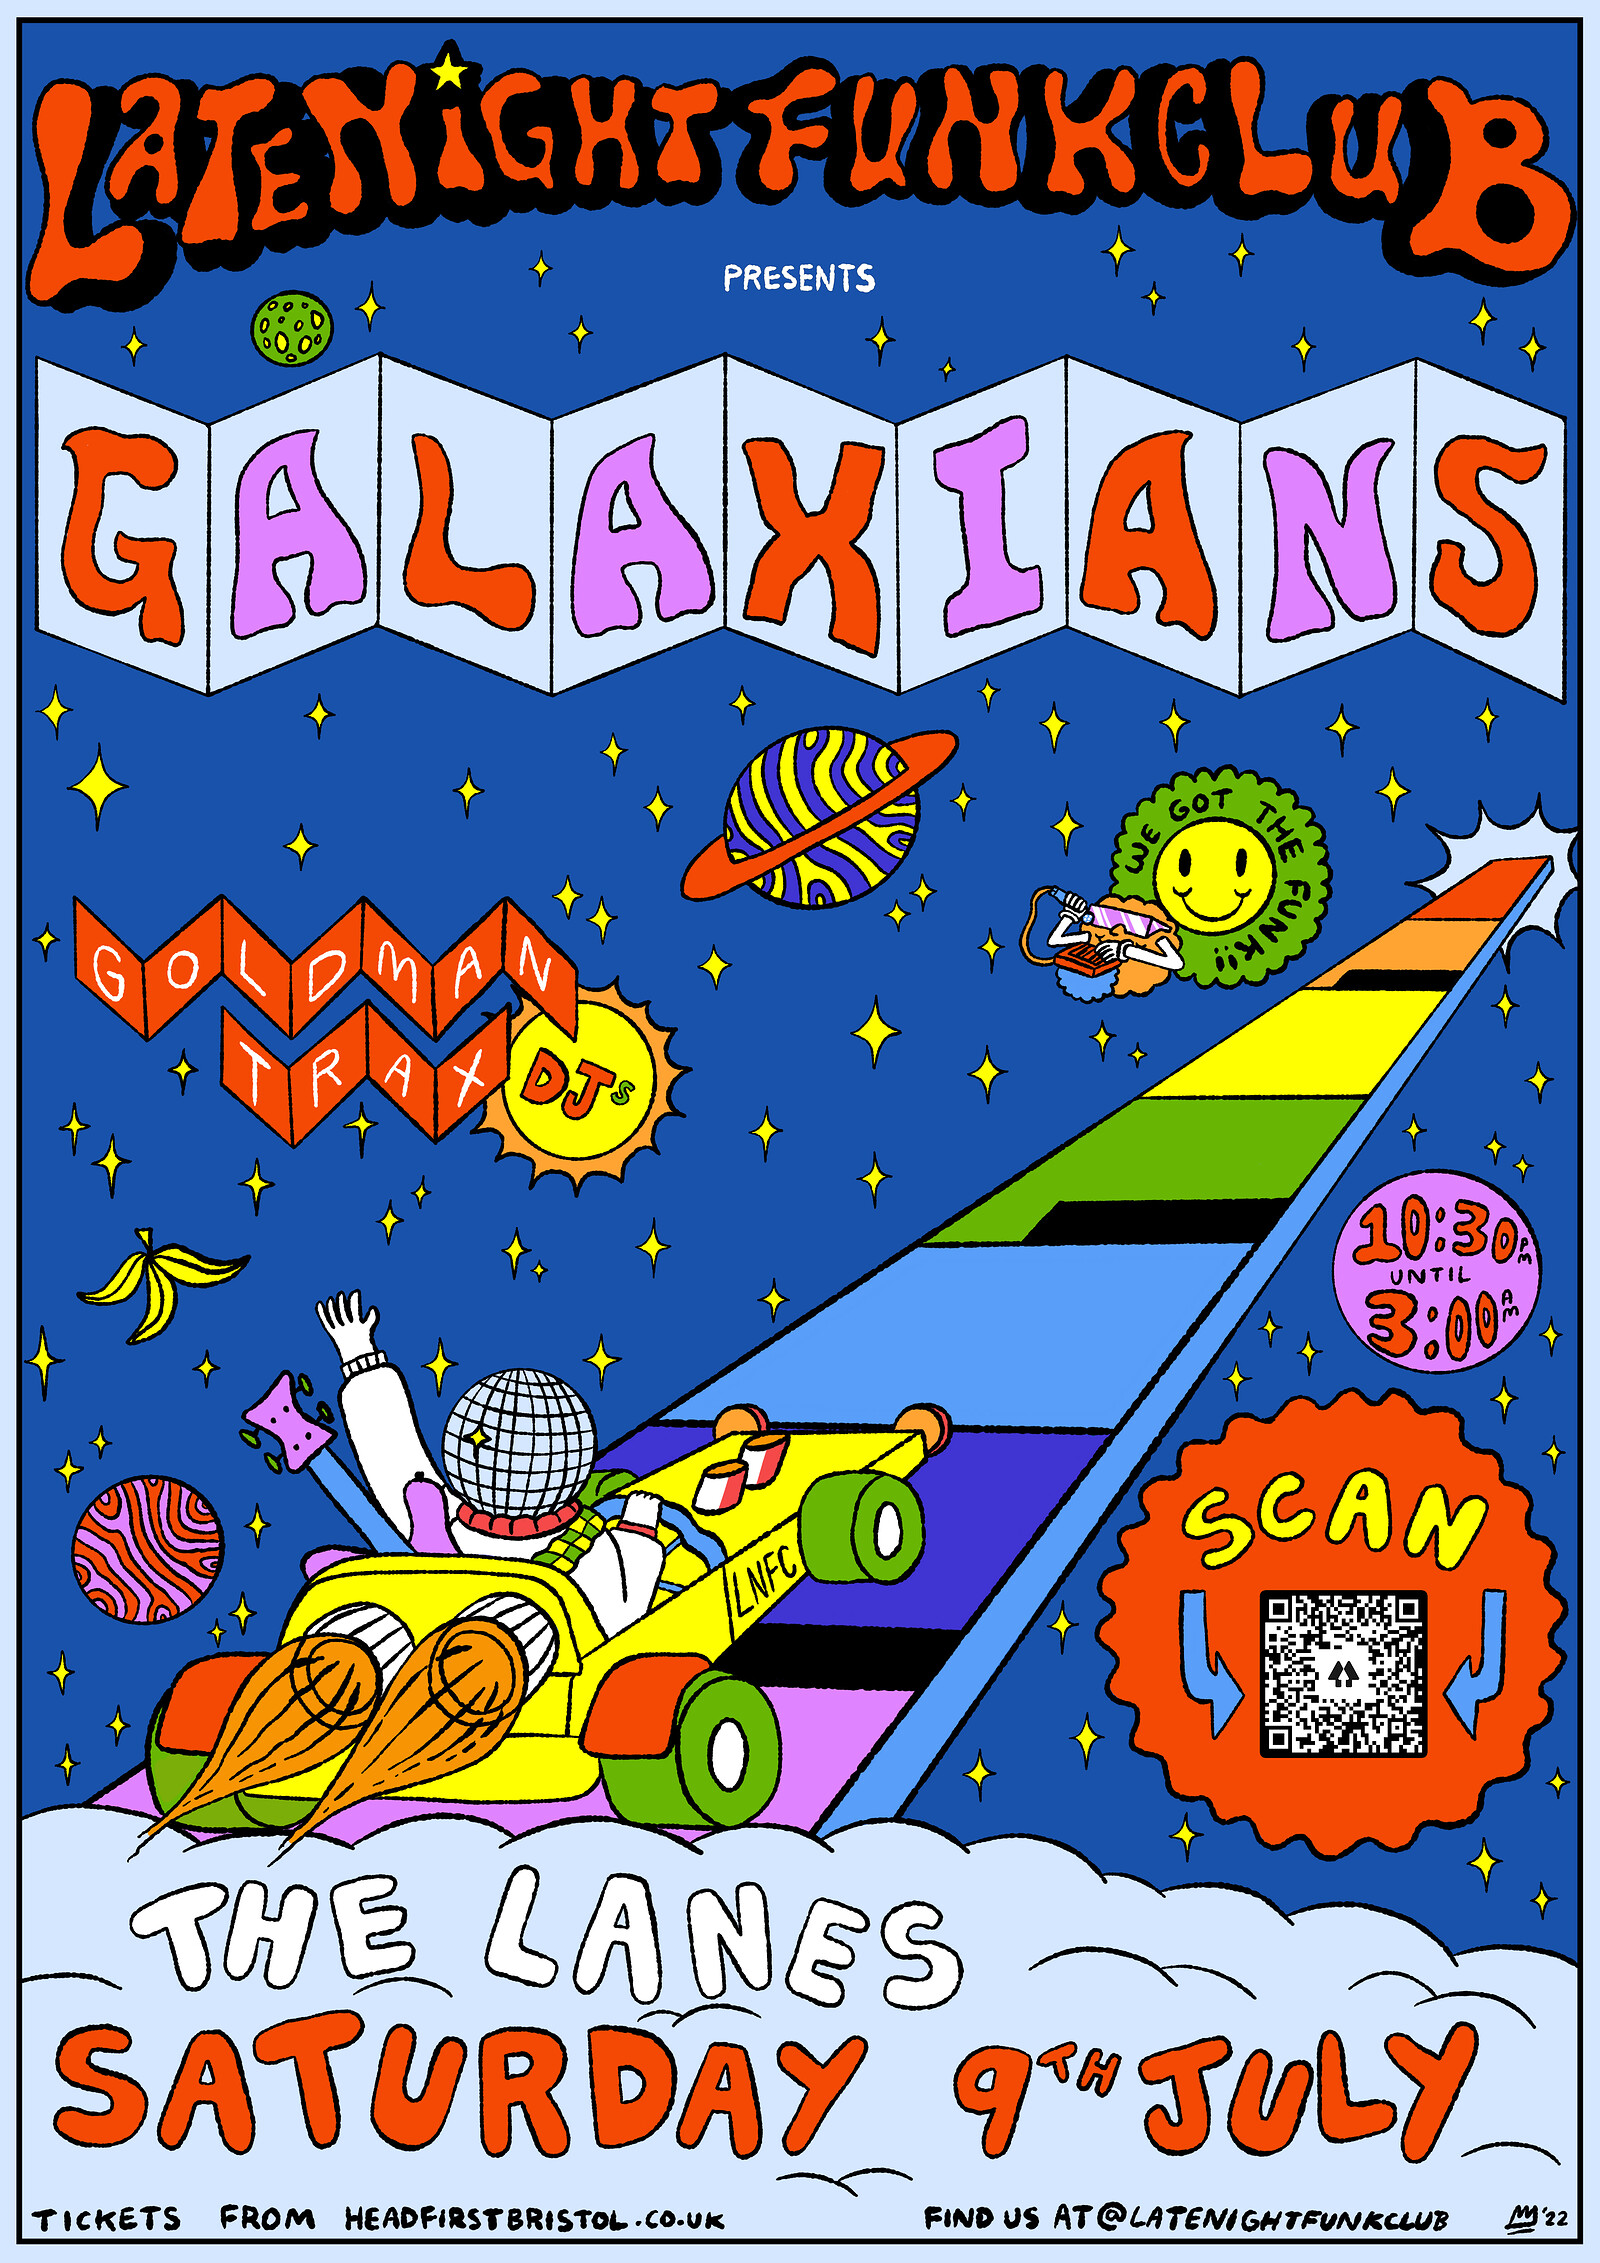 Late Night Funk Club: Galaxians + Goldman Trax at The Lanes